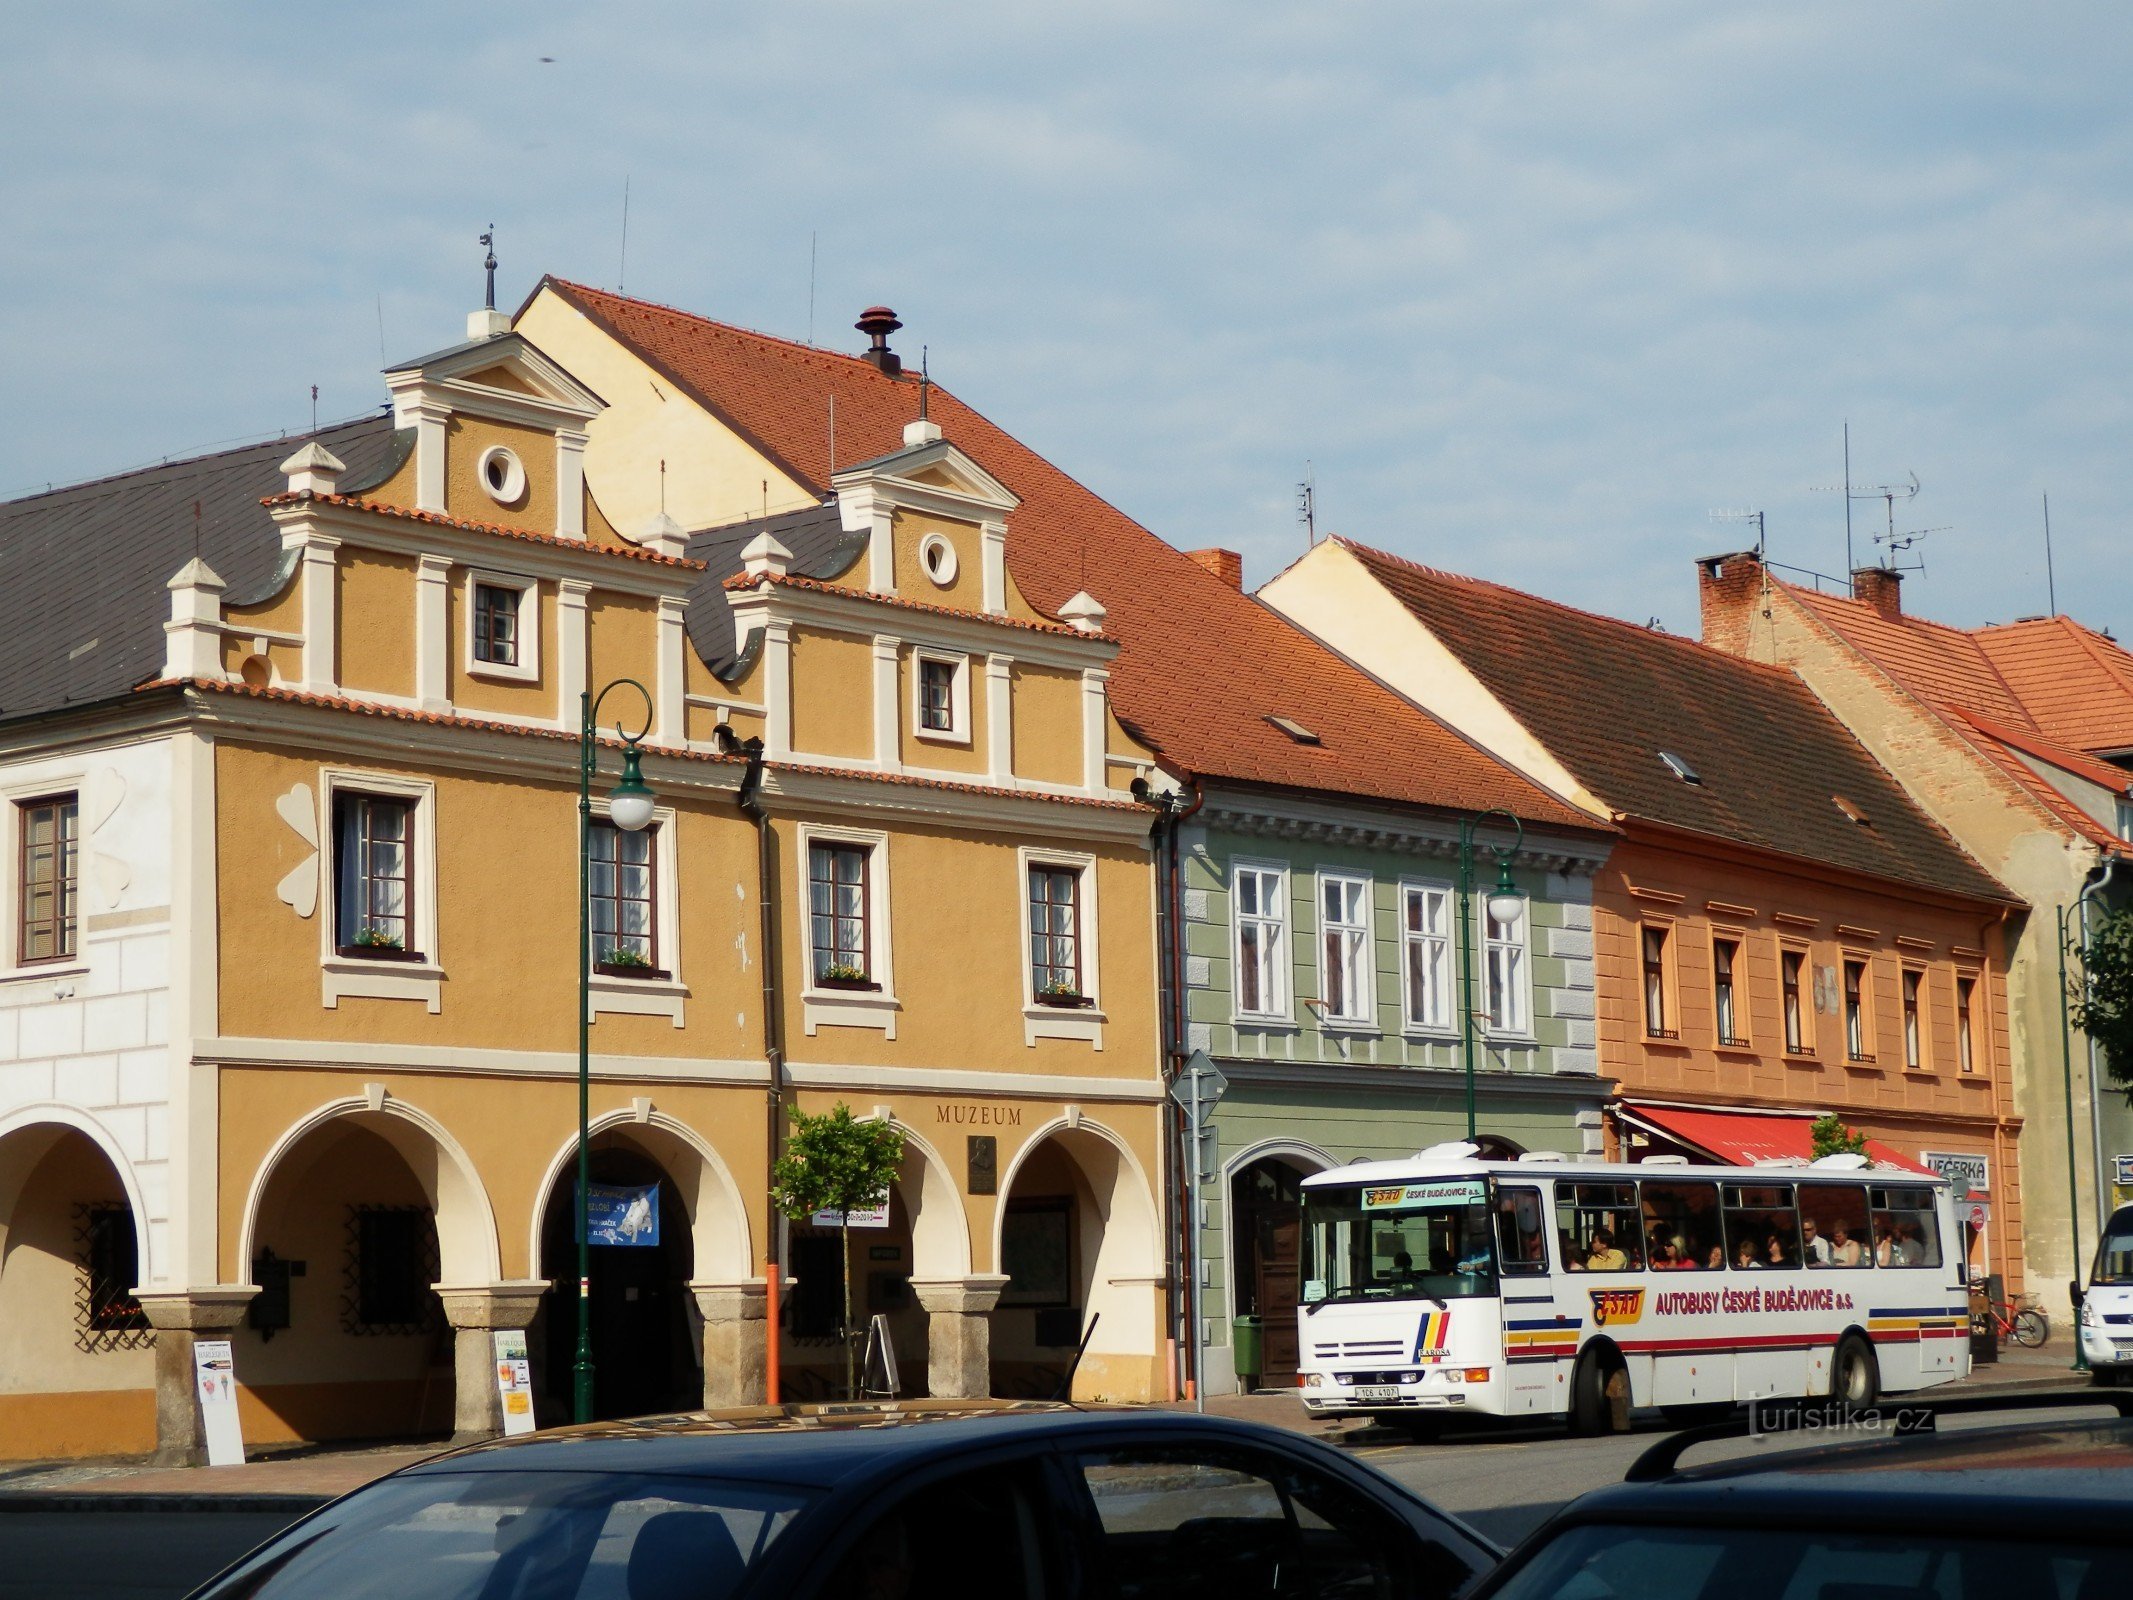 De Netolic a Vodňany, passando pelo castelo de Kratochvíle, o local de peregrinação de Lomec e outros monumentos